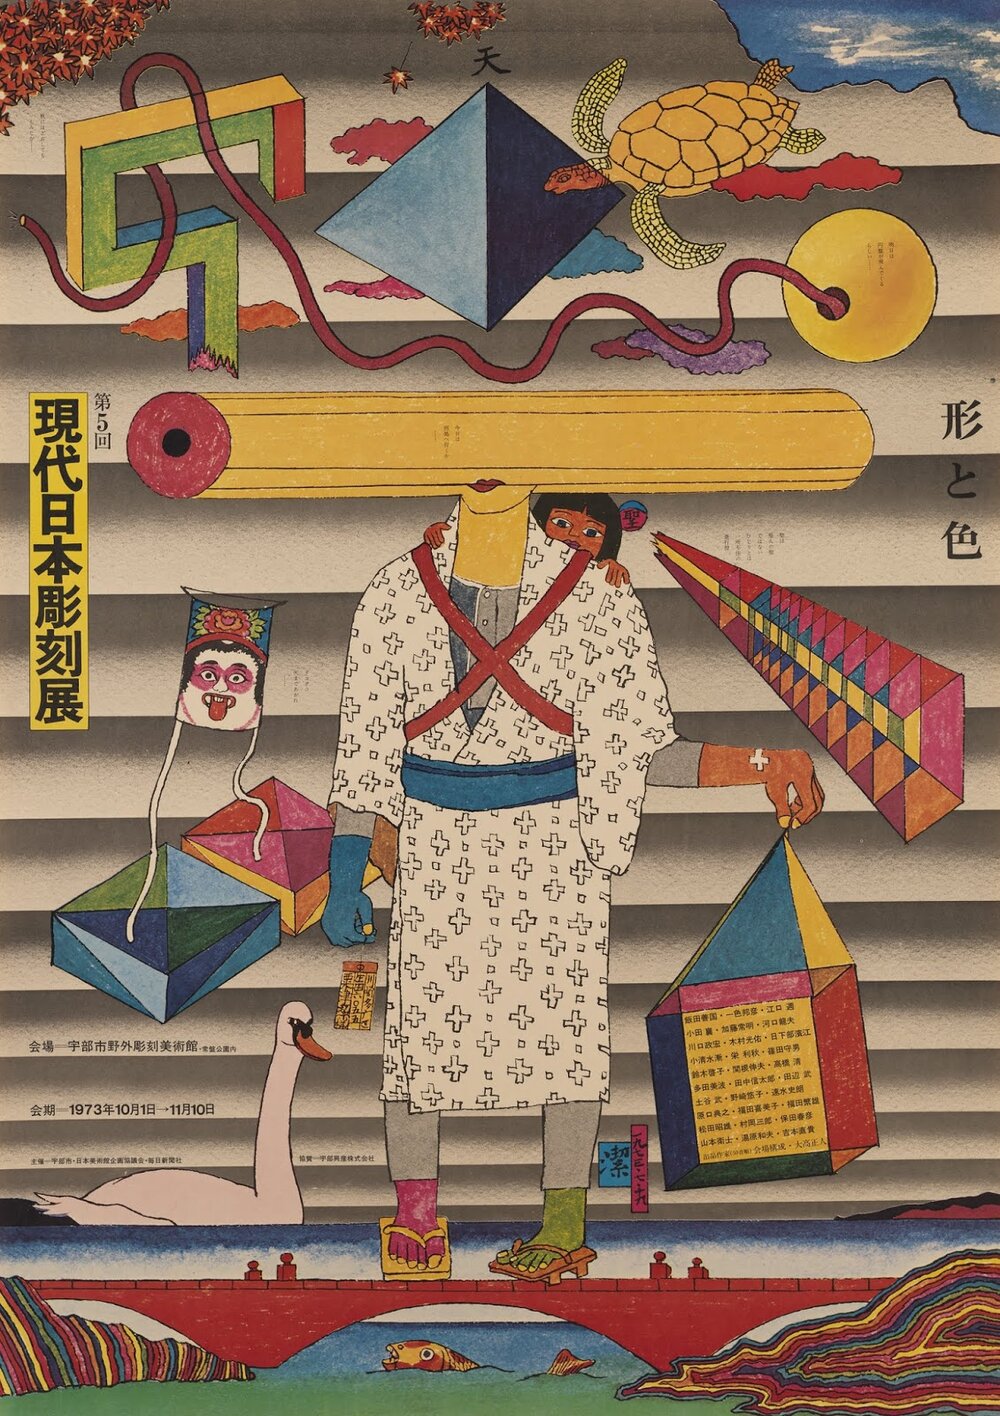 Japanese Folk Art & Design Books 1964